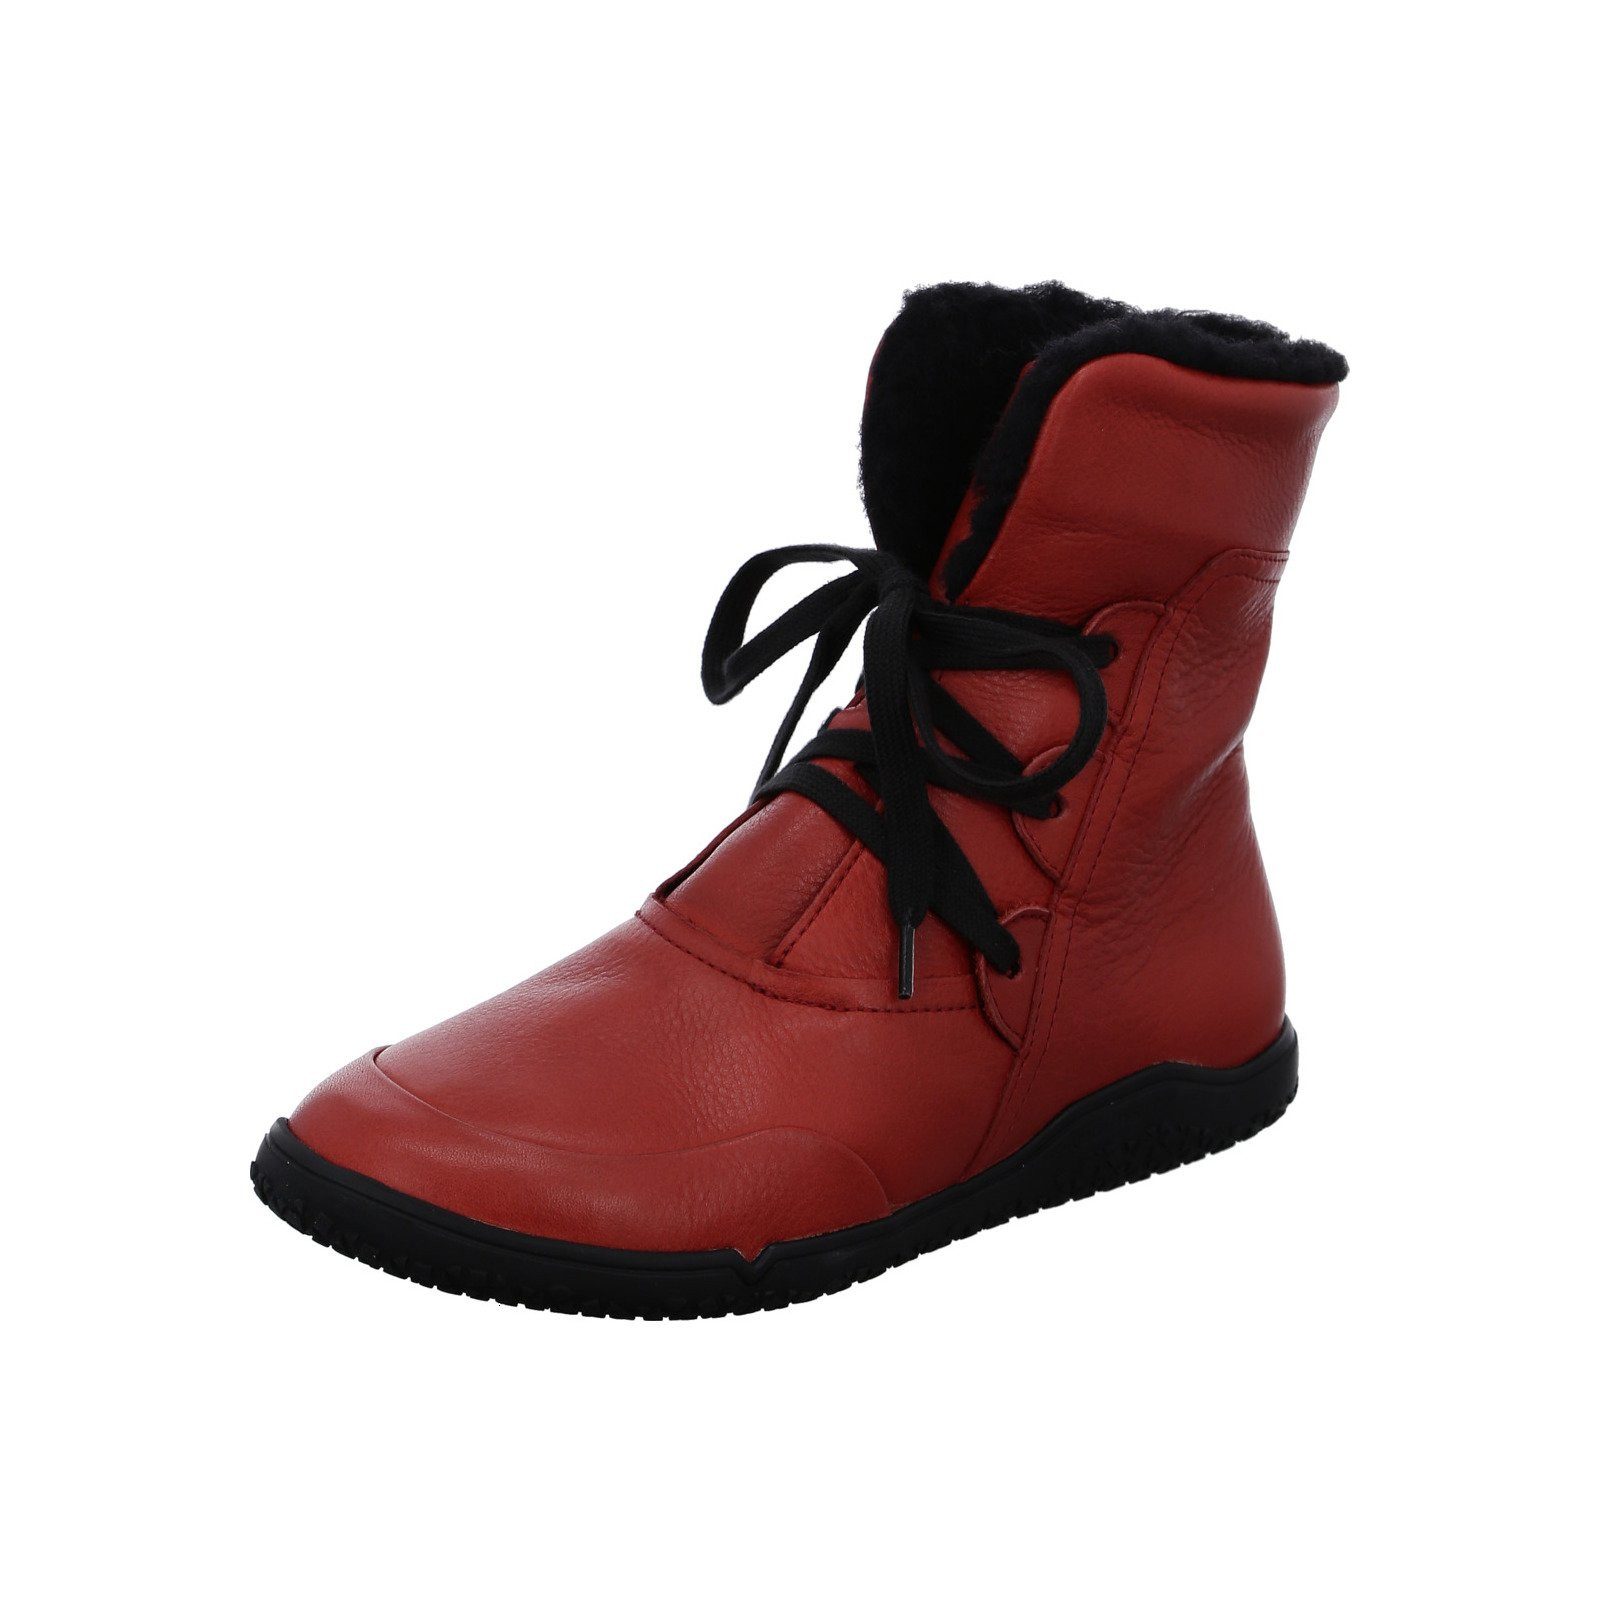 Ara Nature - Damen Schuhe Stiefel rot